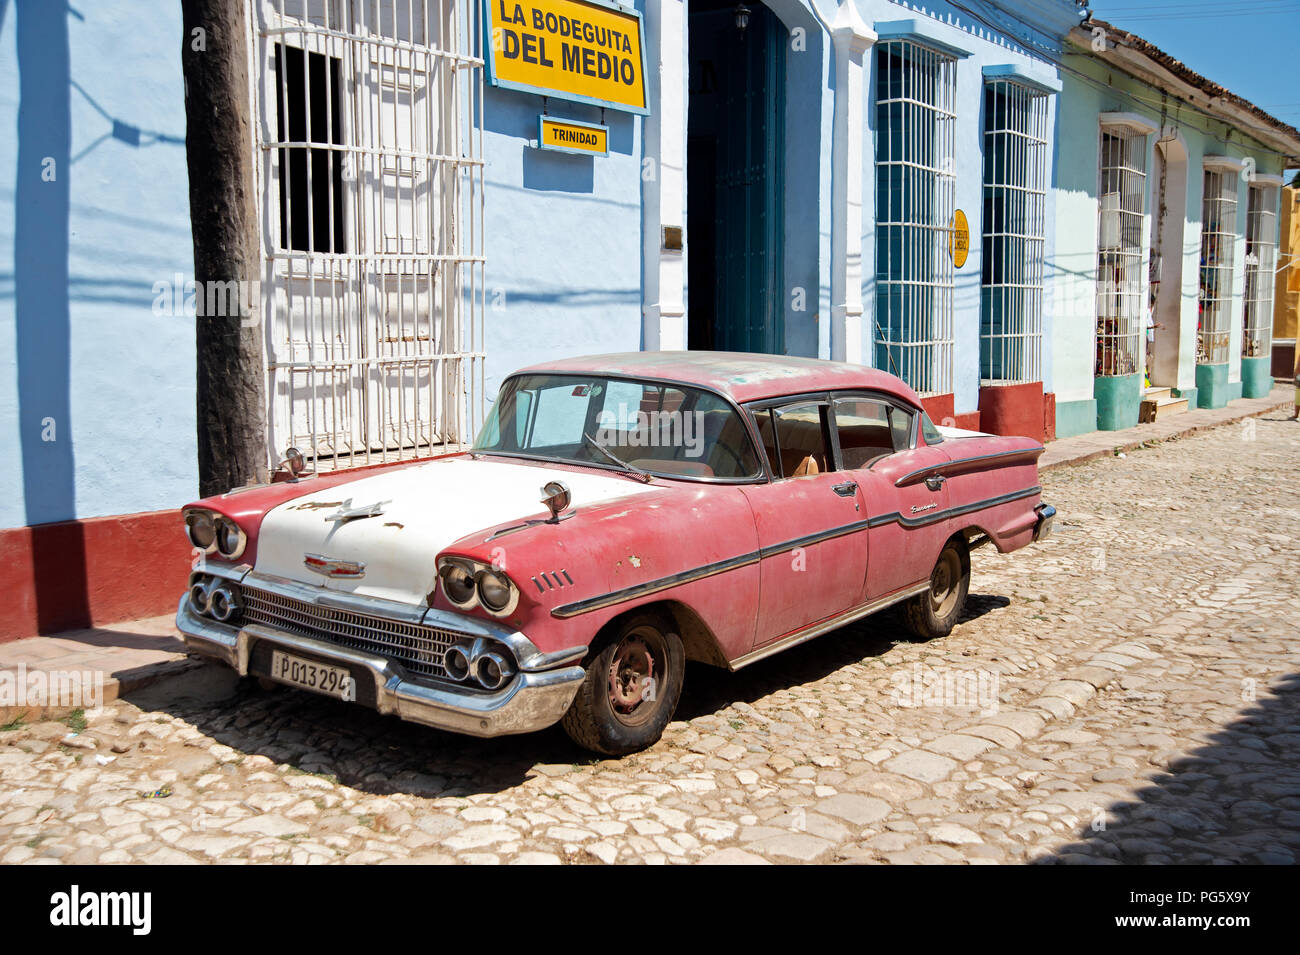 Battere vecchio classico 1950 American automobile parcheggiata di fronte la Bodega del Medio in una strada a ciottoli in Trinidad, Cuba Foto Stock